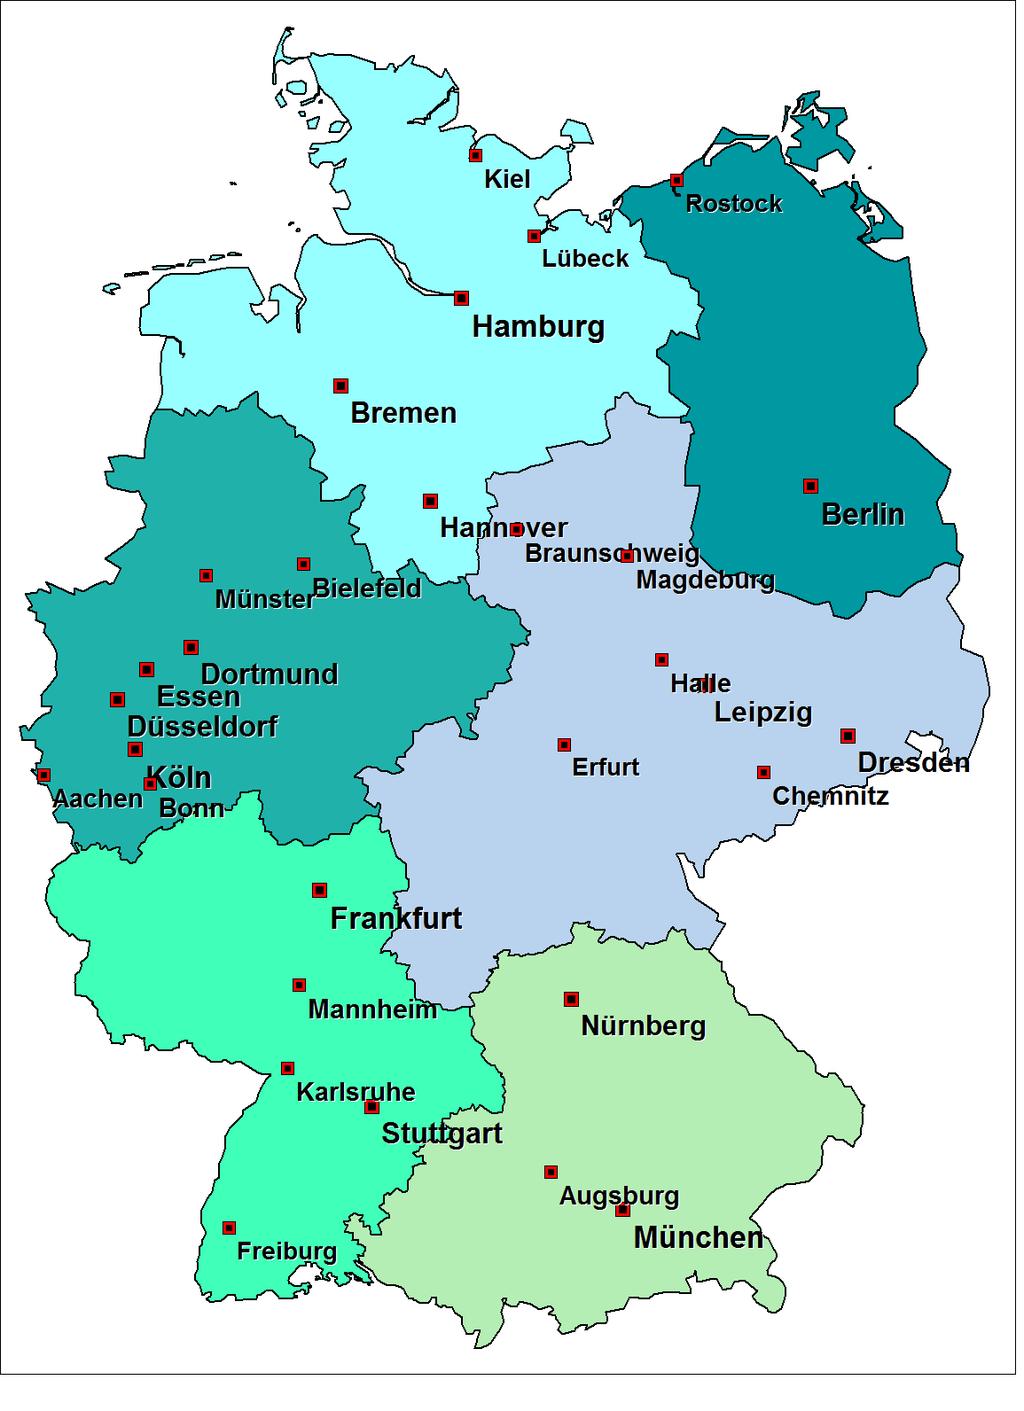 Nord (84) Nordost (59) West (246) Rhein- Neckar (276) Mitteldeutschland (110) Süd (147) Mitgliederstruktur der DGfM 2014 mit Anzahl der Mitglieder je Regionalverband